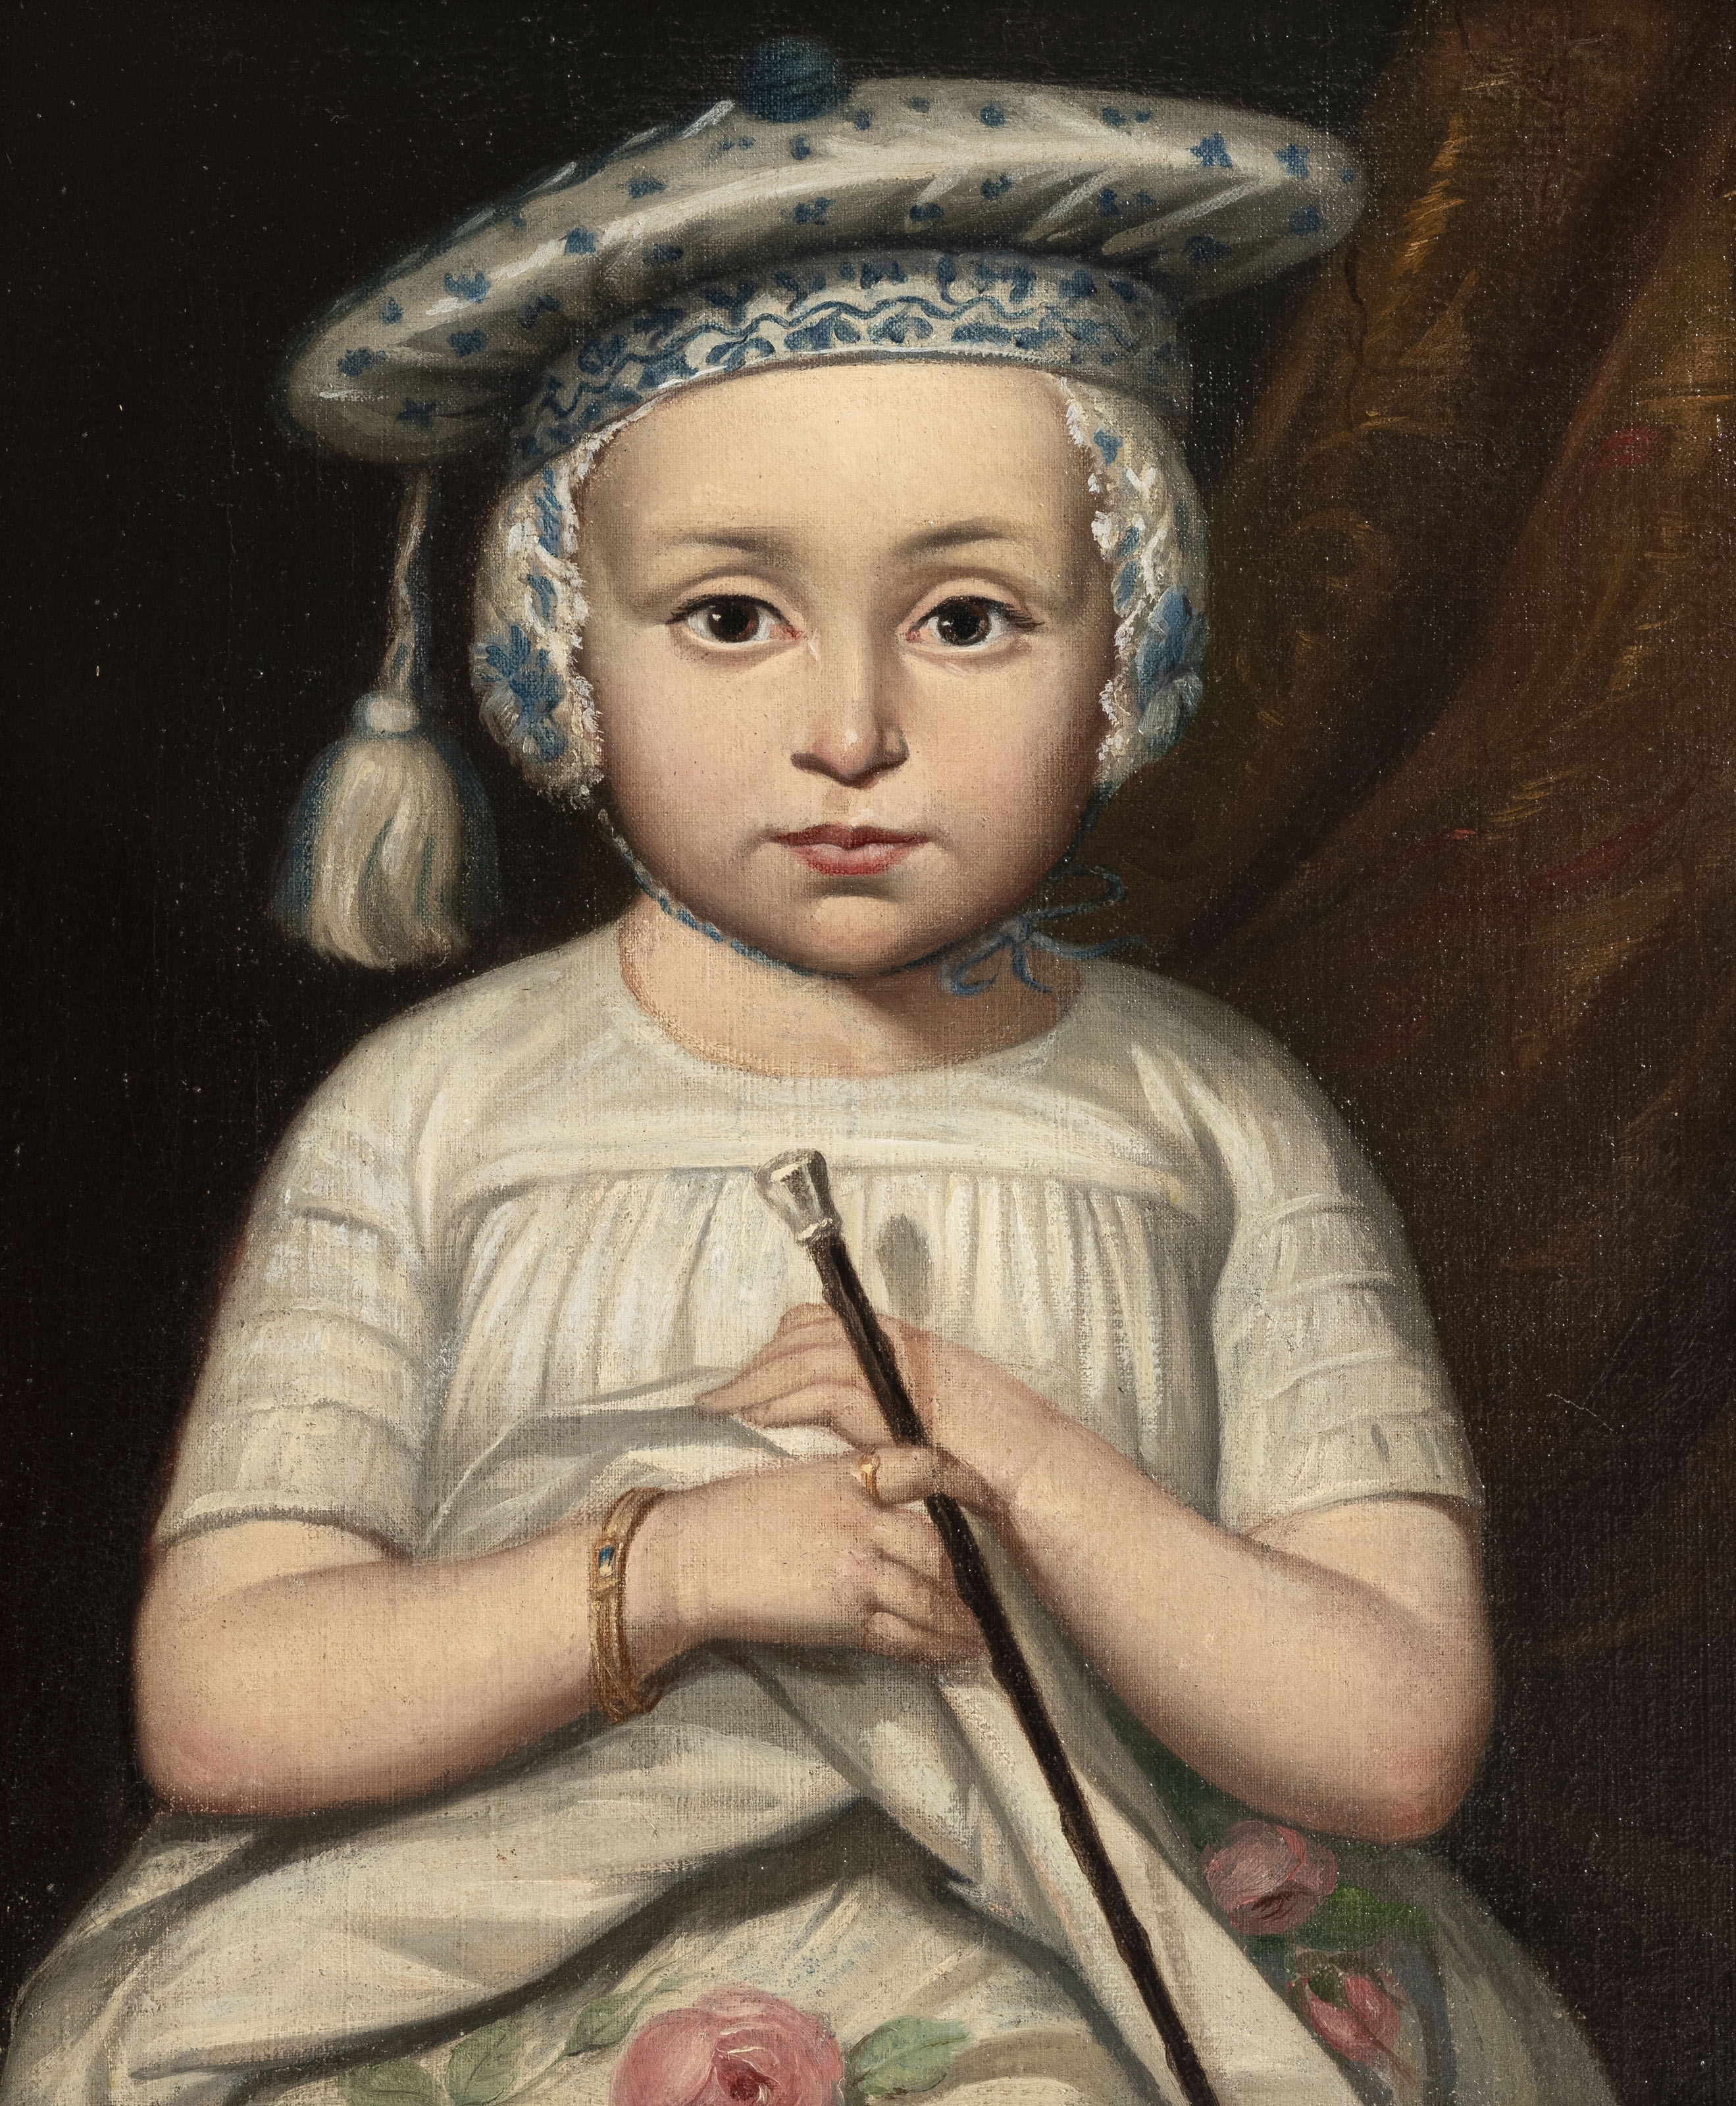 Portrait d'enfant by Jean-Auguste-Dominique Ingres